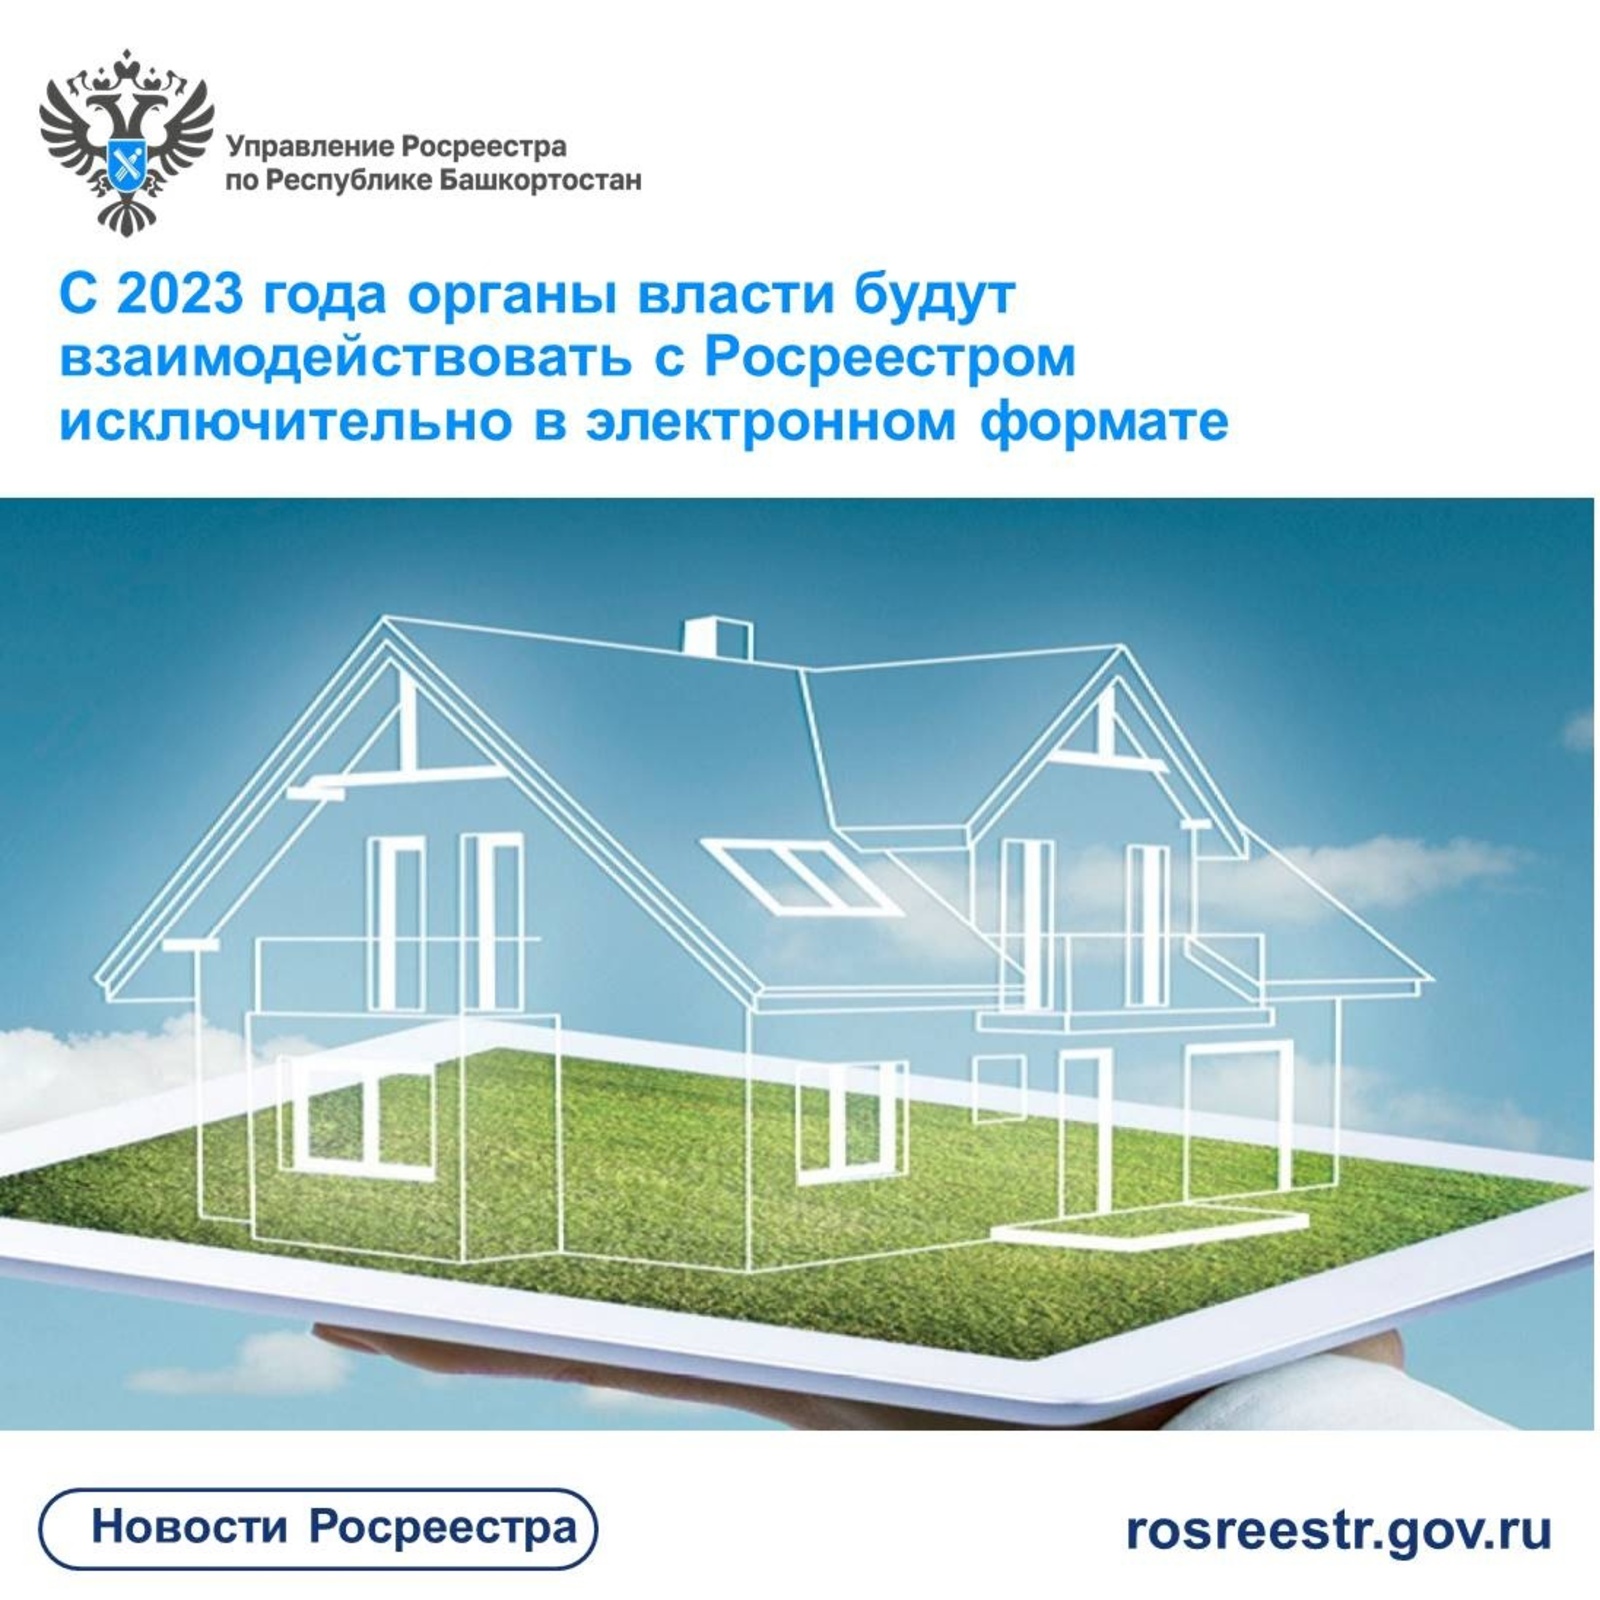 С 1 января 2023 года органы власти Башкортостана полностью перейдут на электронное взаимодействие с Росреестром